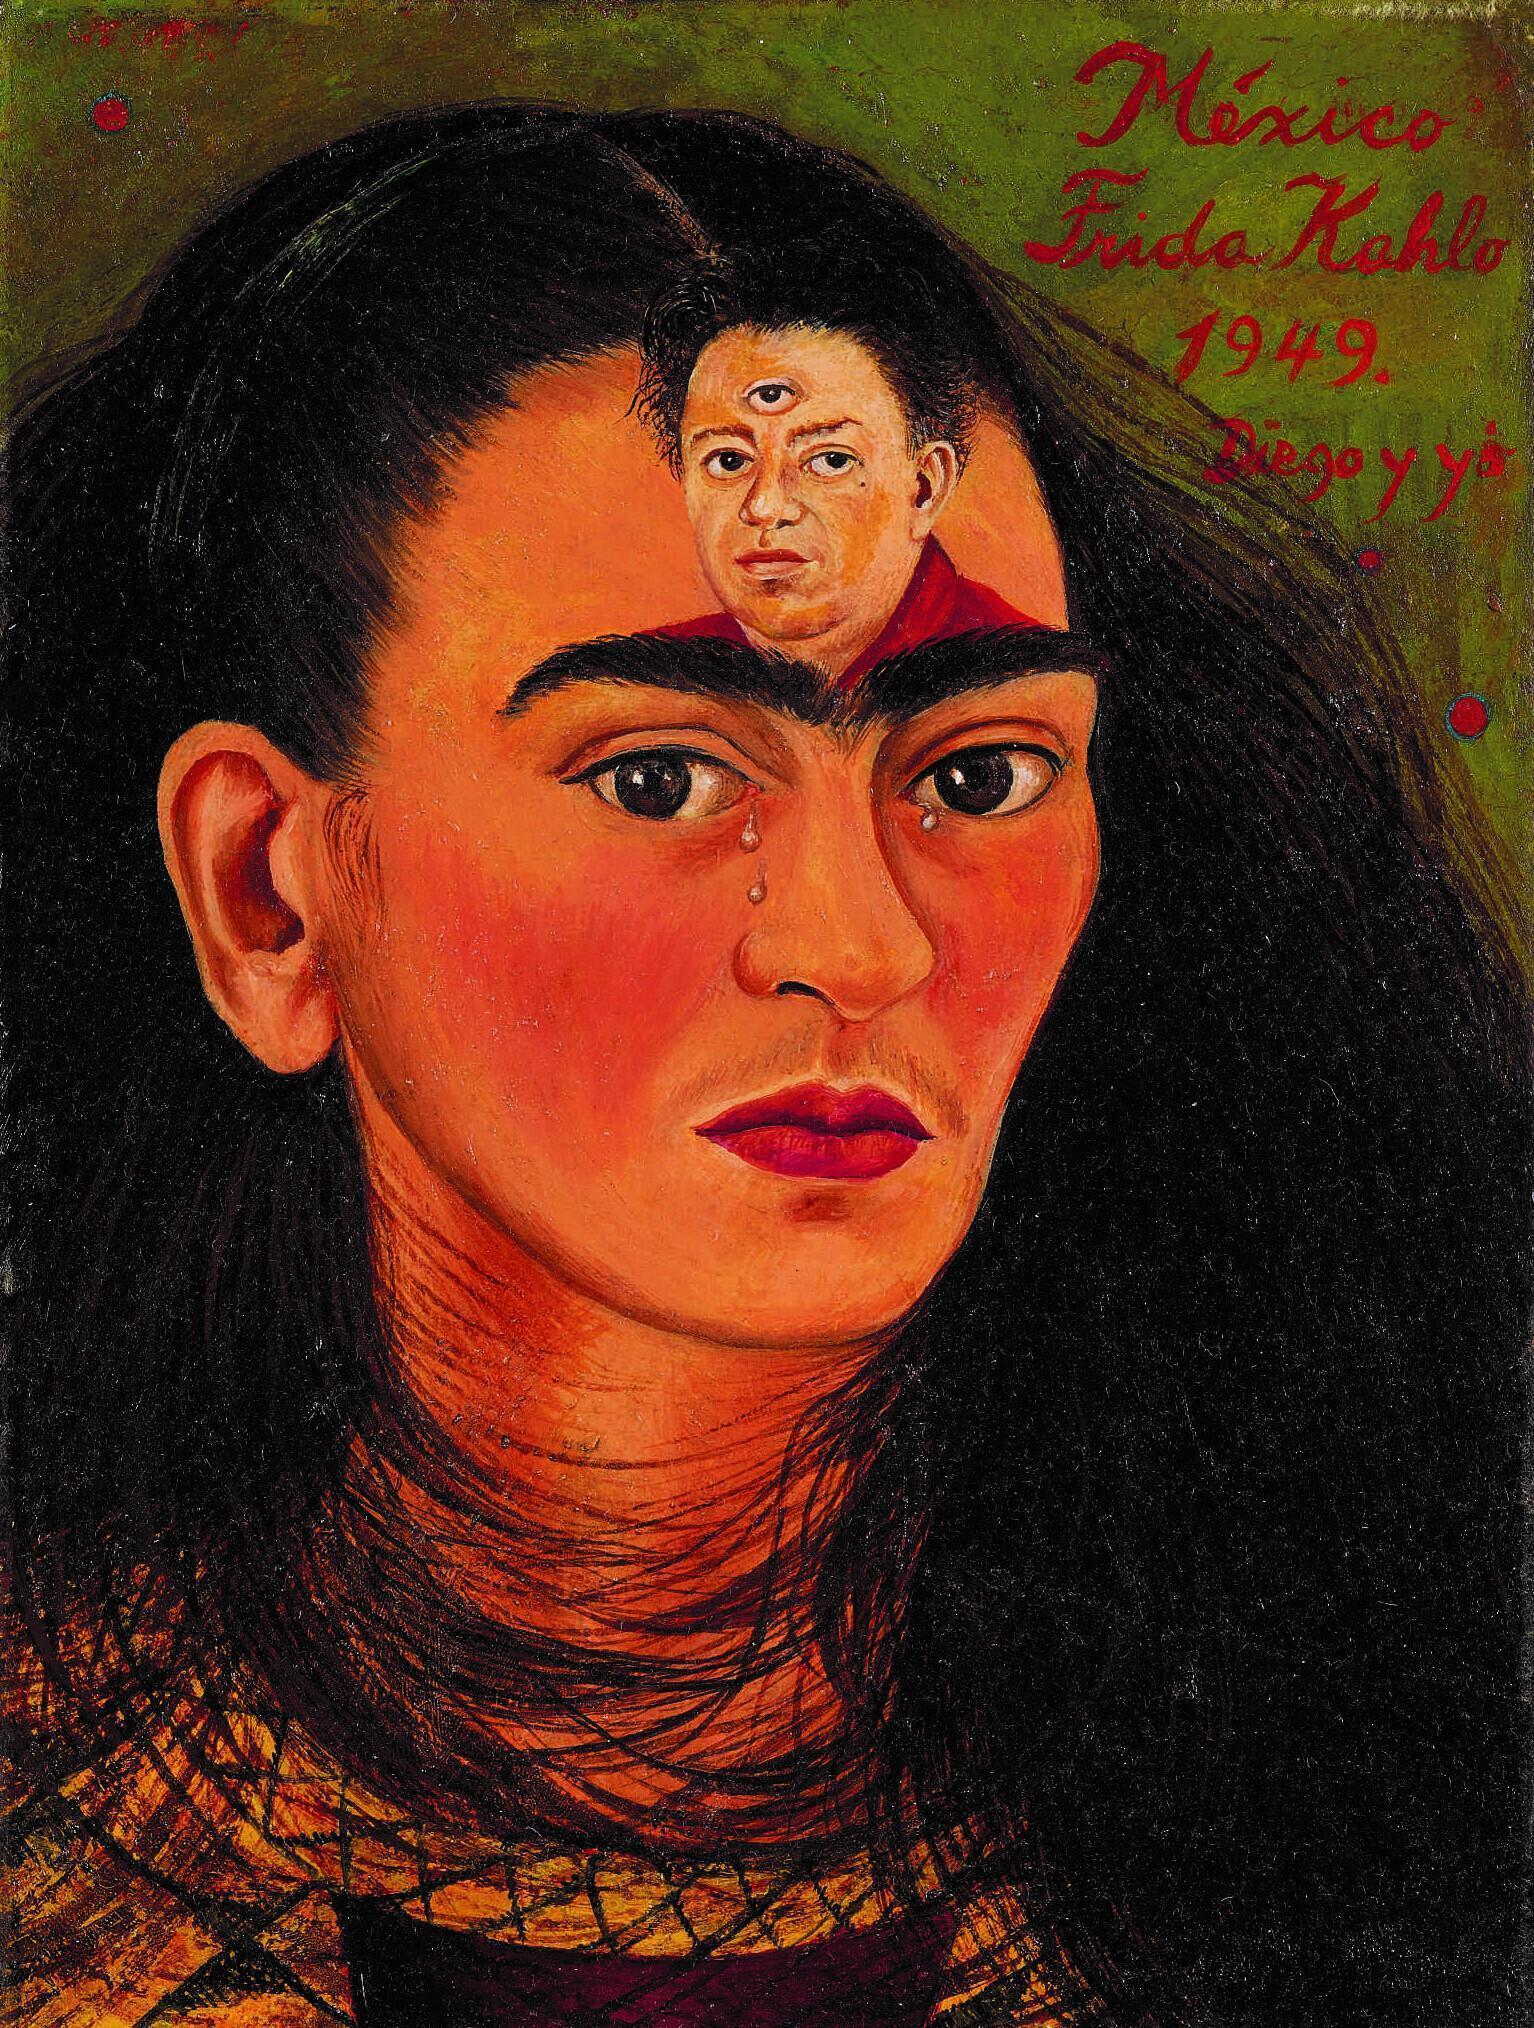 Frida Kahlonun otoportresi açık artırmaya çıkıyor